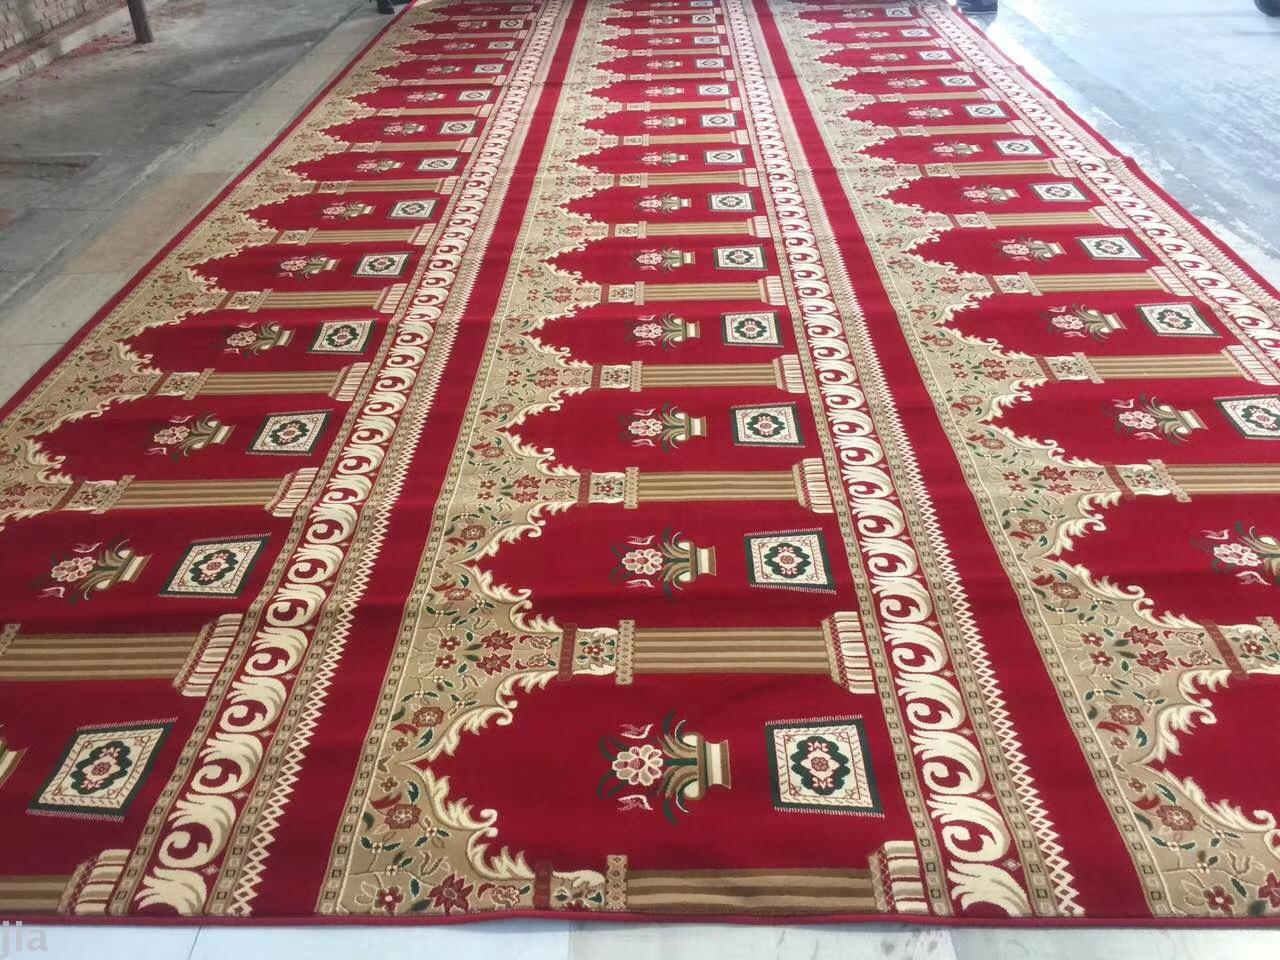 威尔顿加捻礼拜毯穆斯林机制地毯清真寺地毯满铺单丝地毯外贸